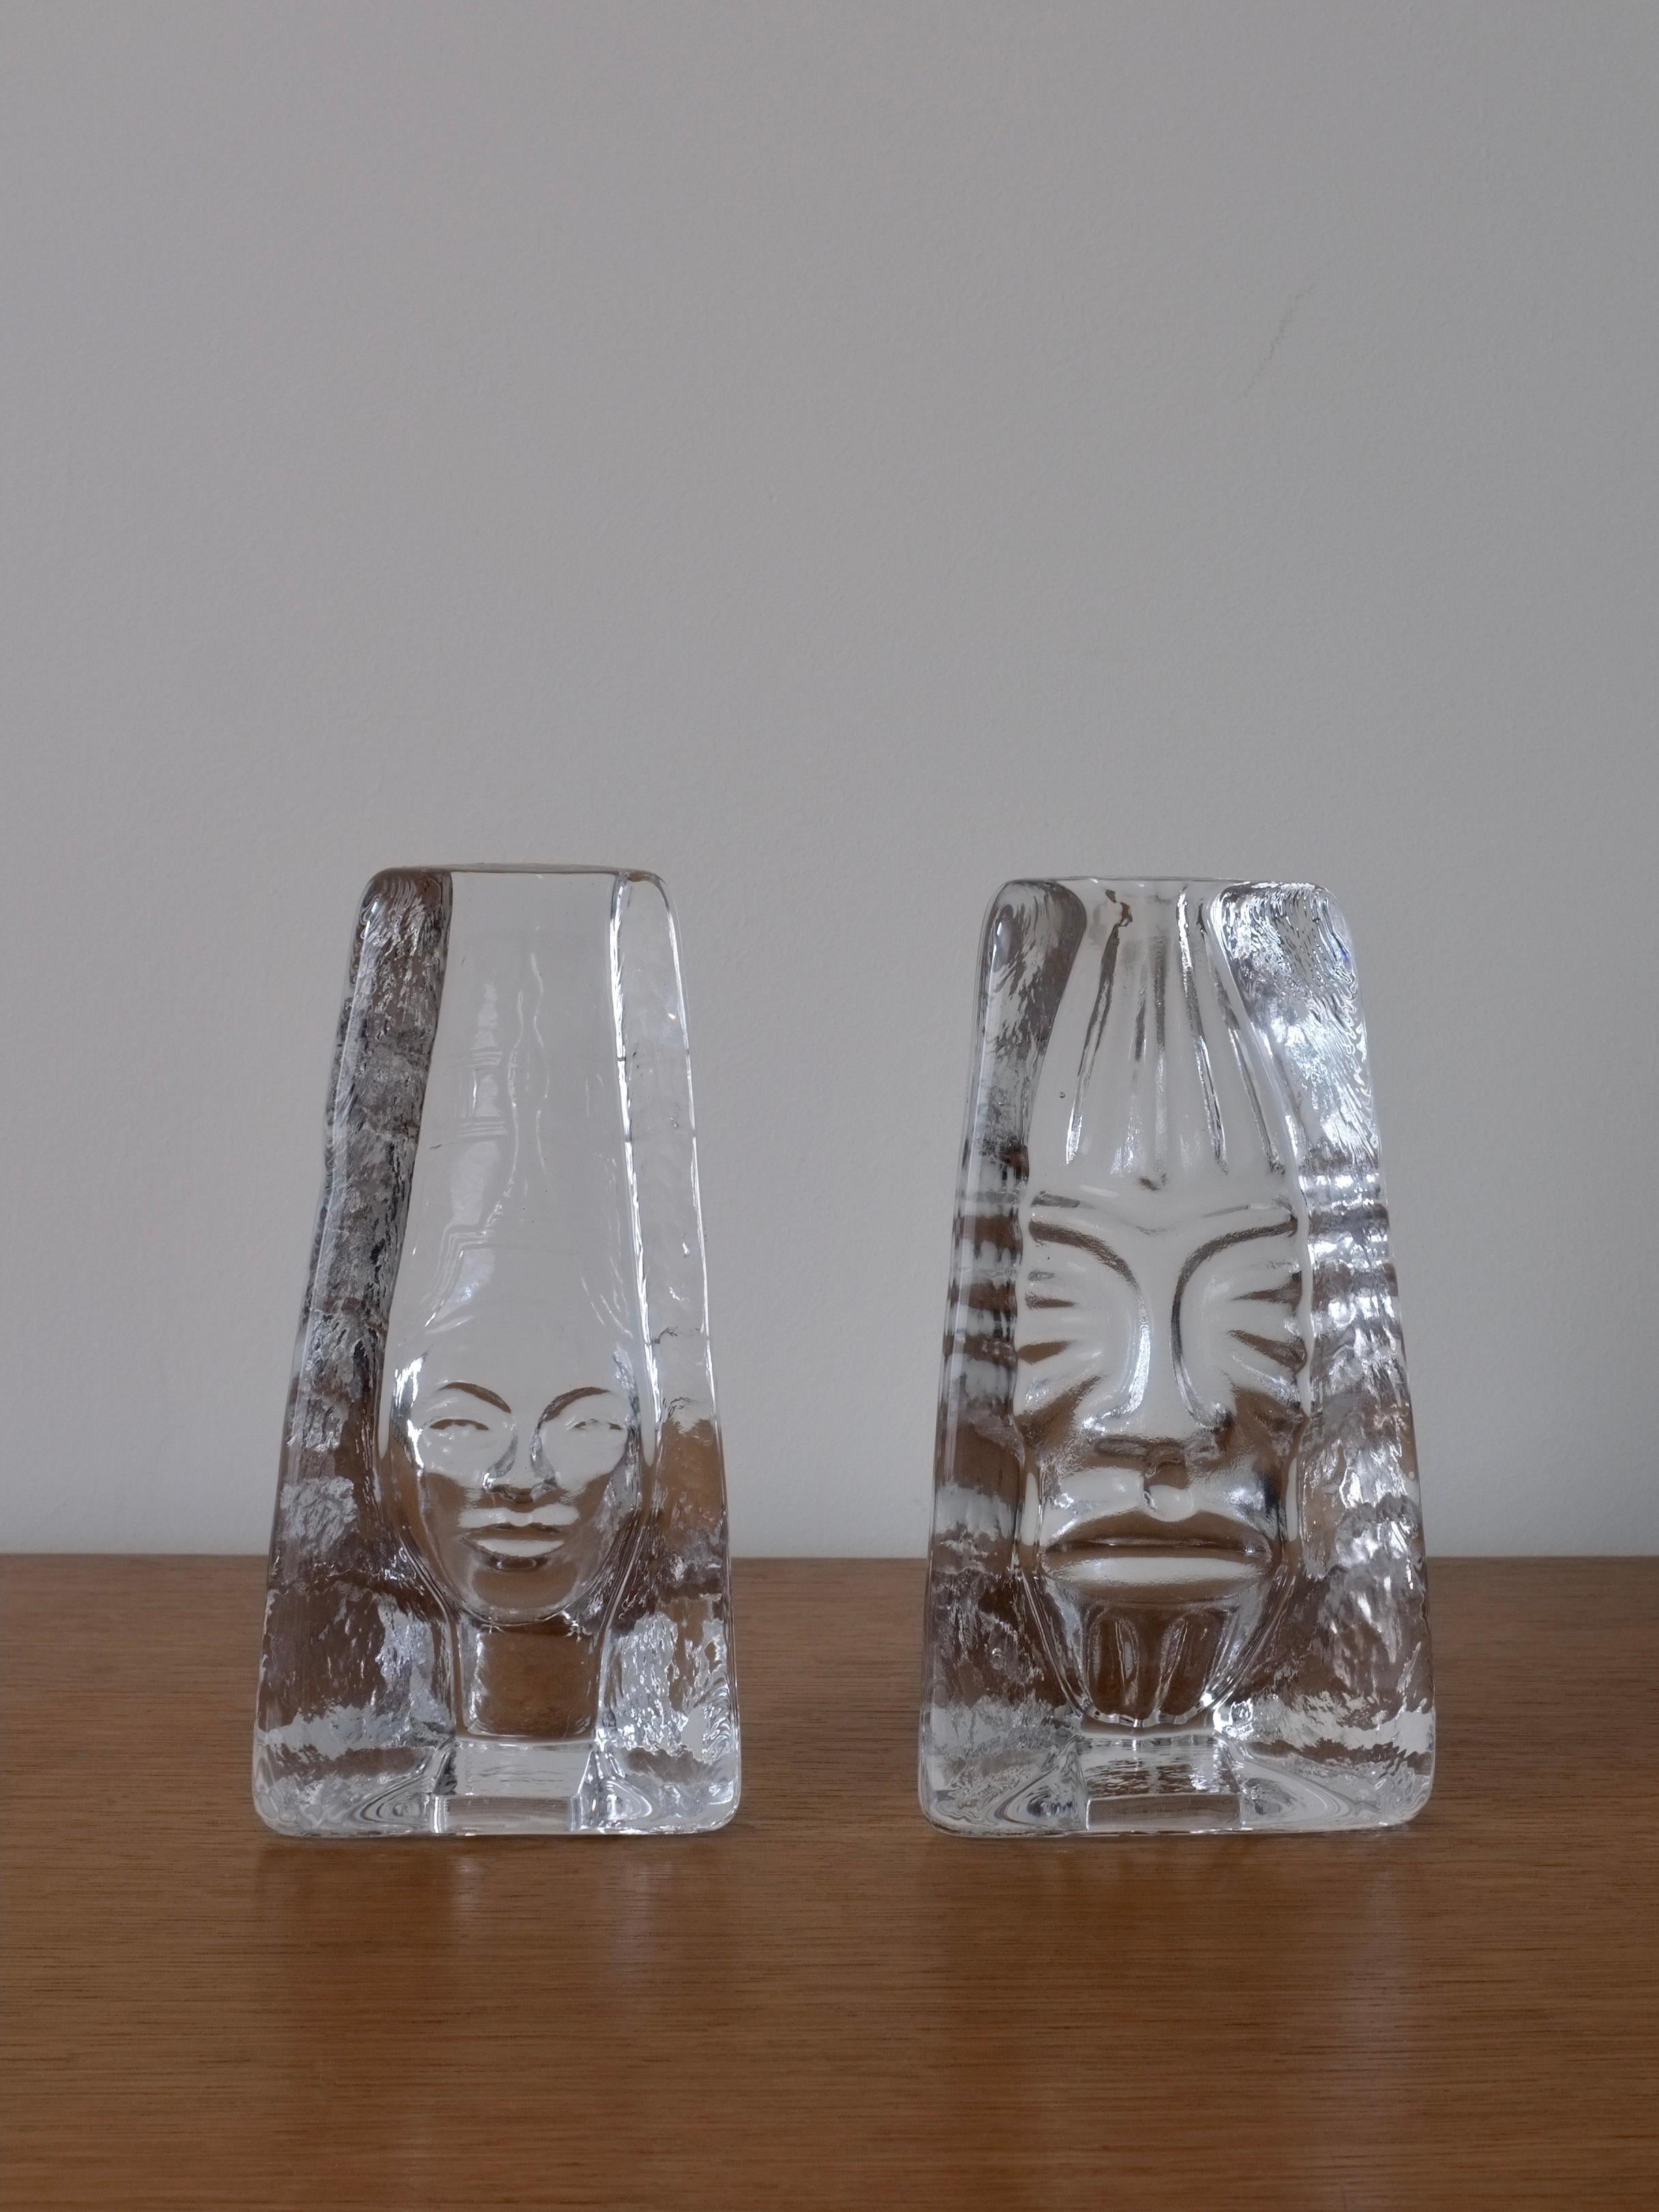 Ensemble de 2 sculptures en verre clair brutalistes vintage de la série Moai conçue par Renate Stock-Paulsson dans les années 1990 (en production jusqu'aux années 2000) pour la société suédoise Sea Glasbruk. Néfertiti et Masque.